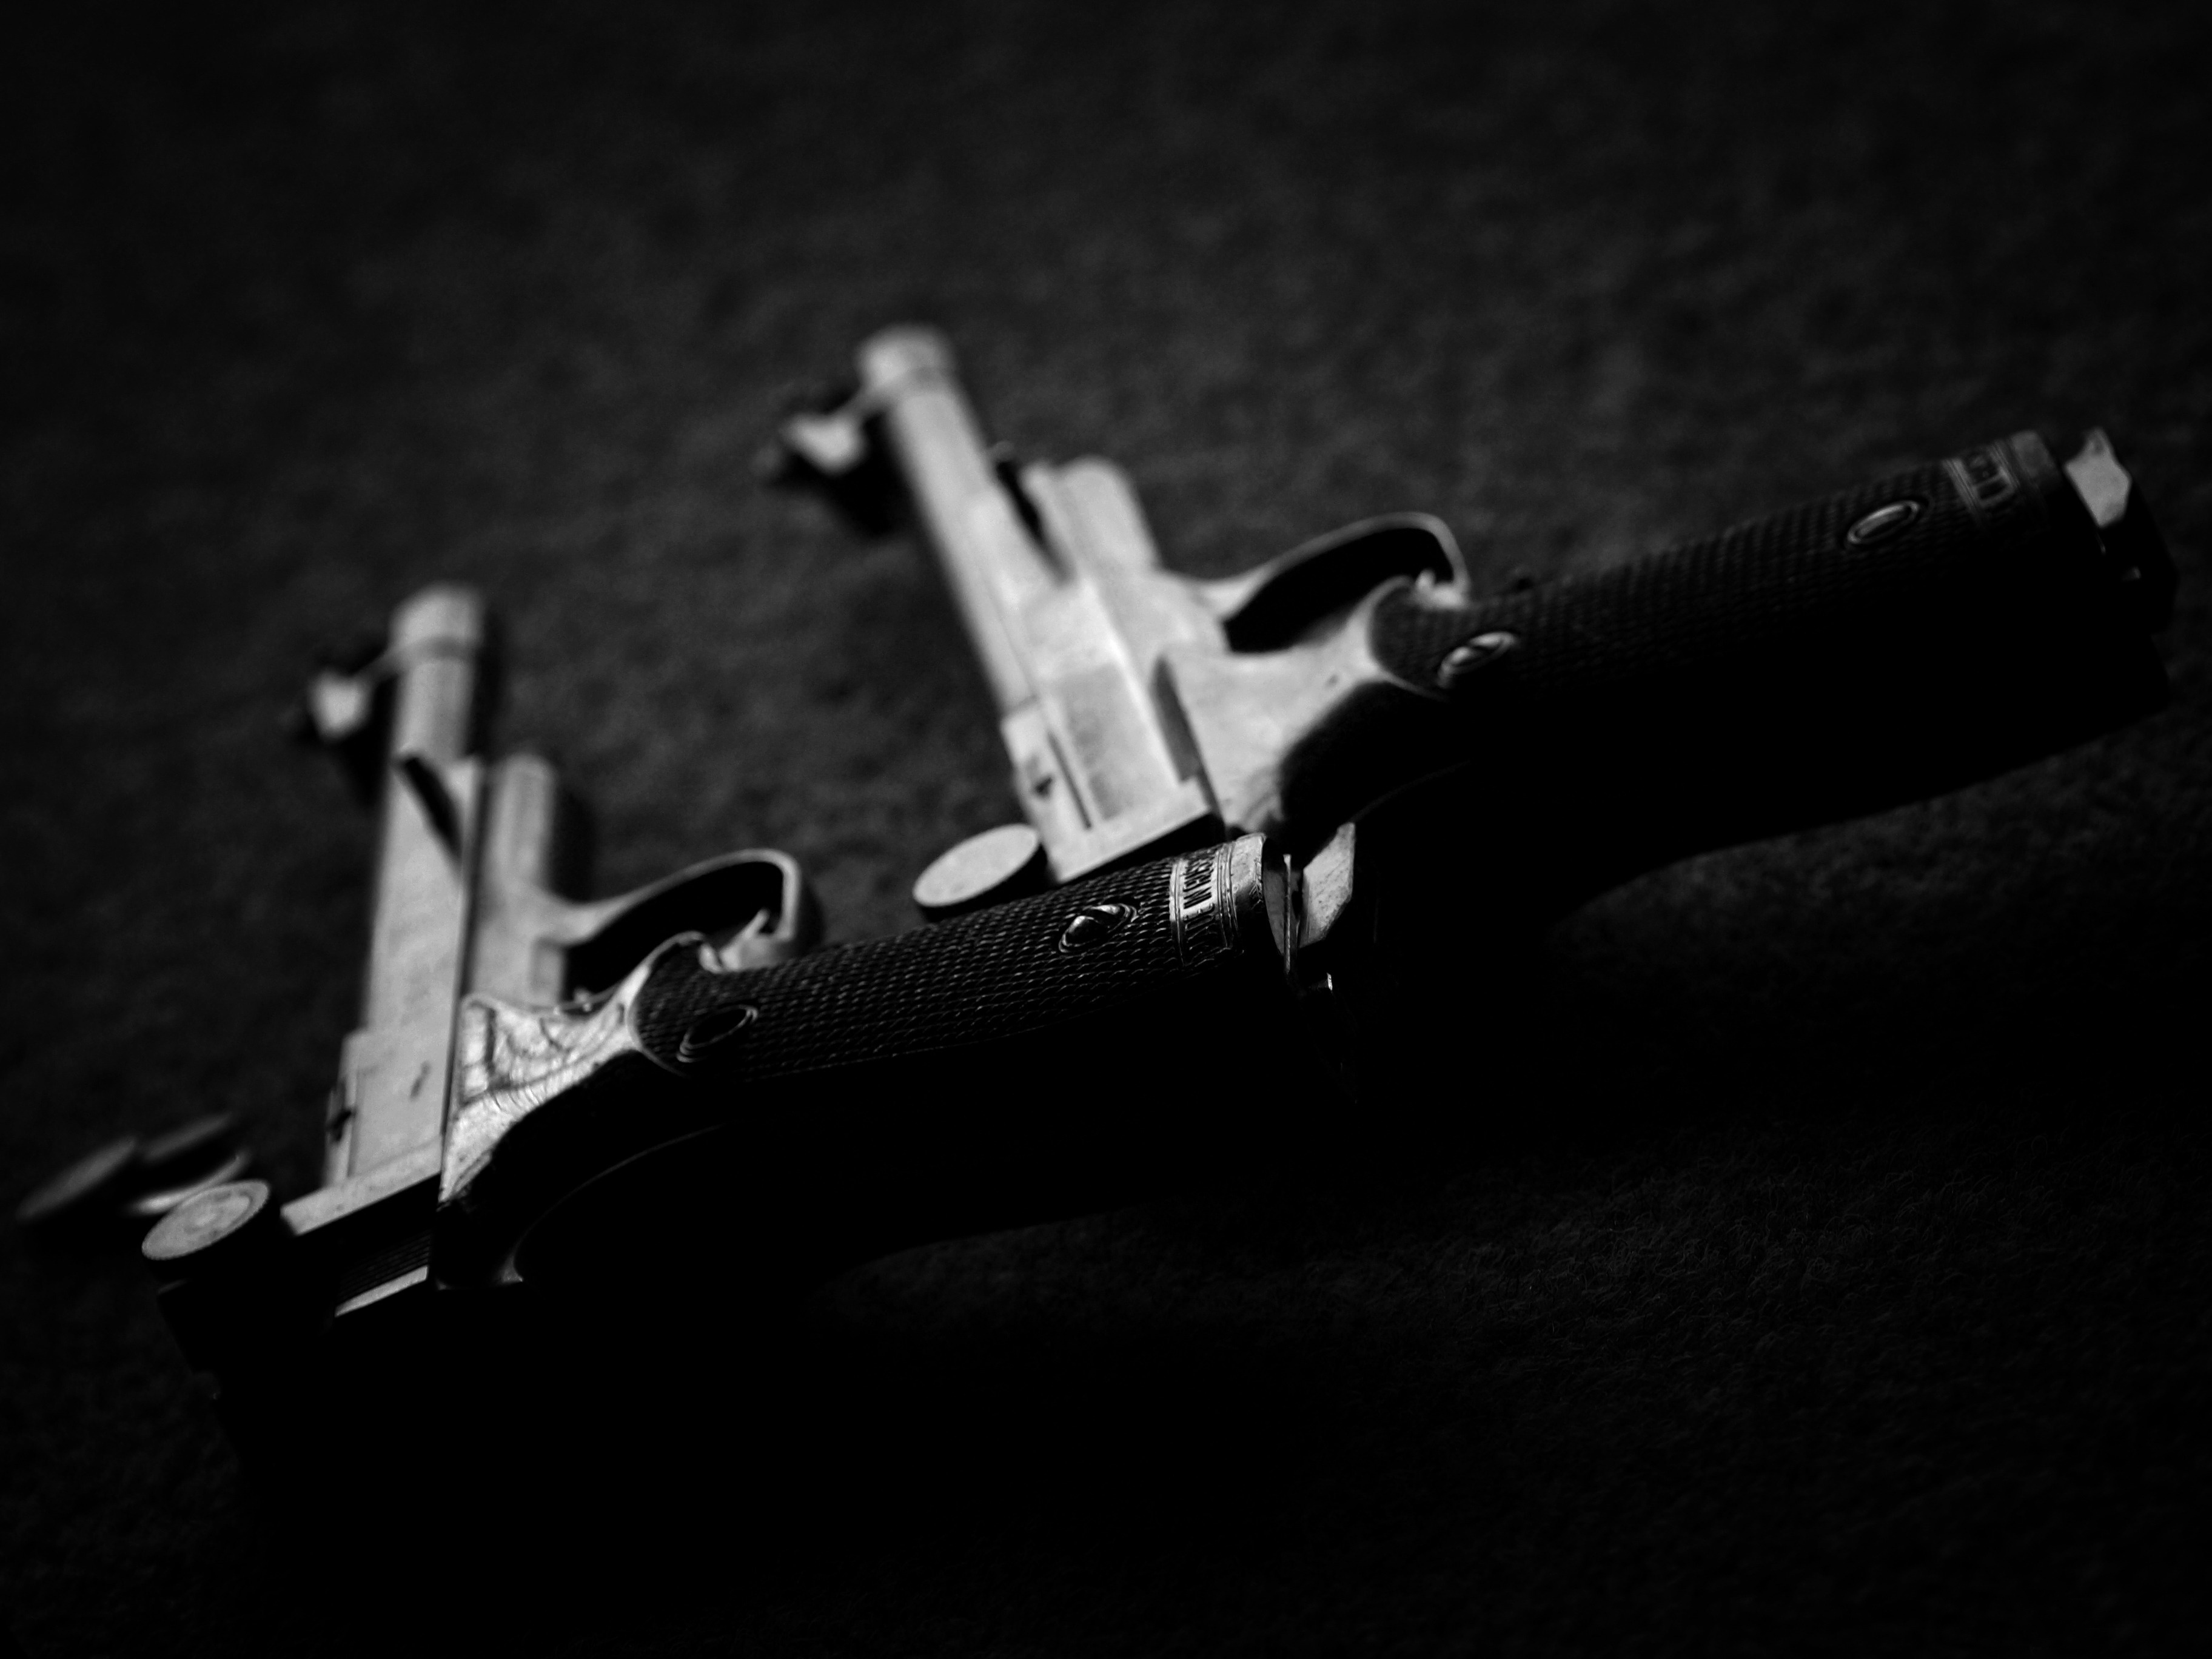 Скачать обои бесплатно Пистолет, Оружие картинка на рабочий стол ПК